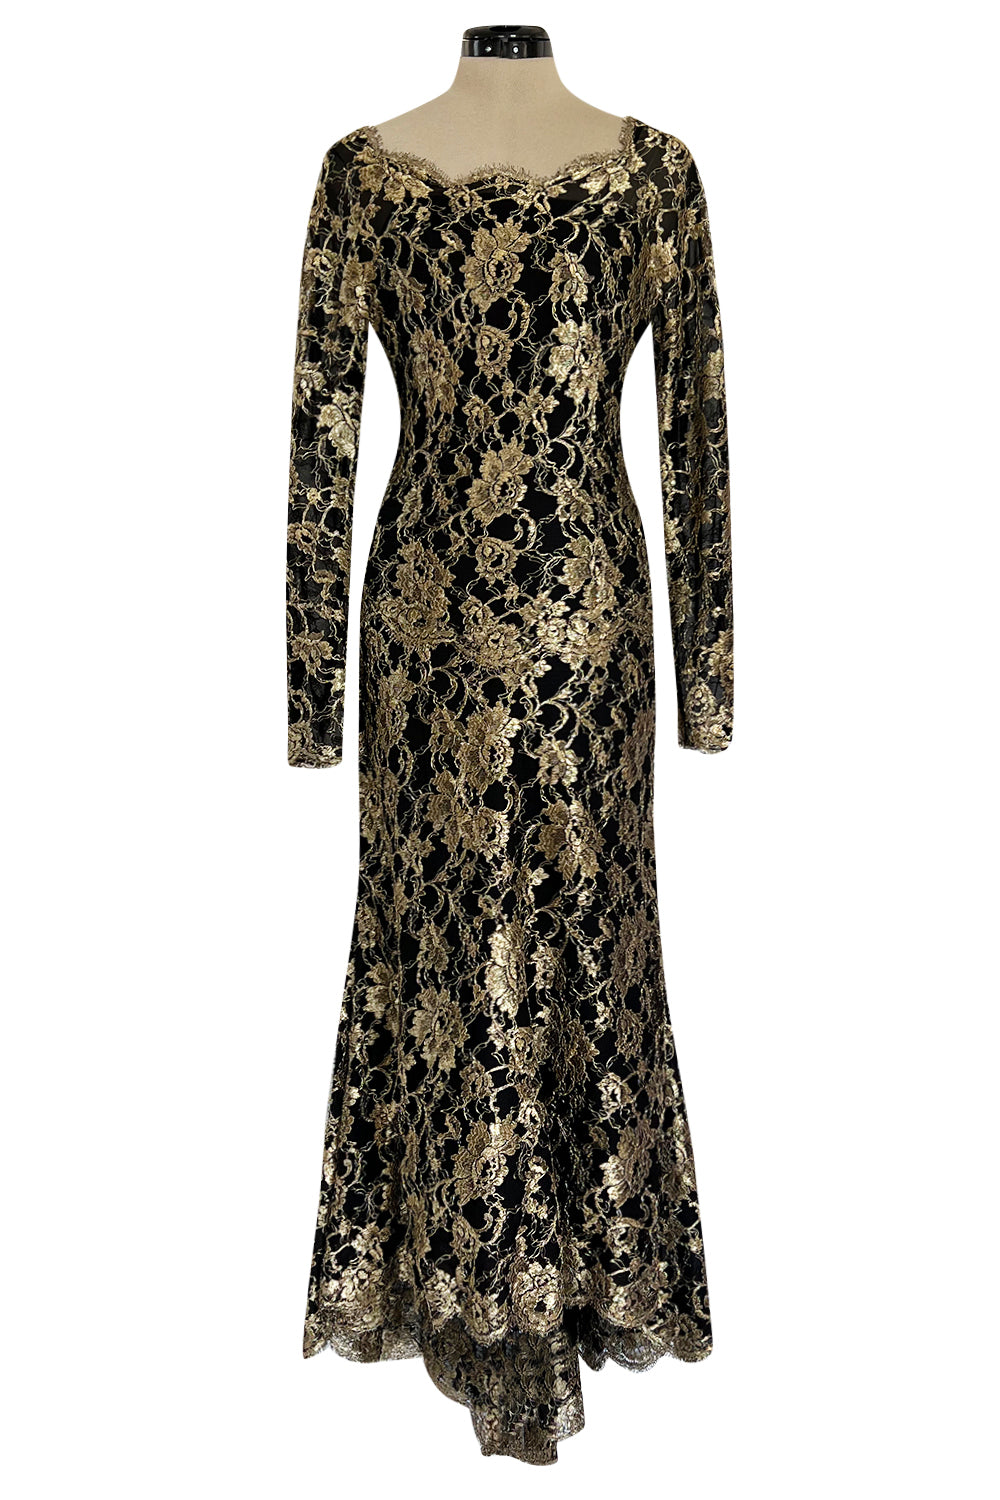 vintage Chanel gown - Gem